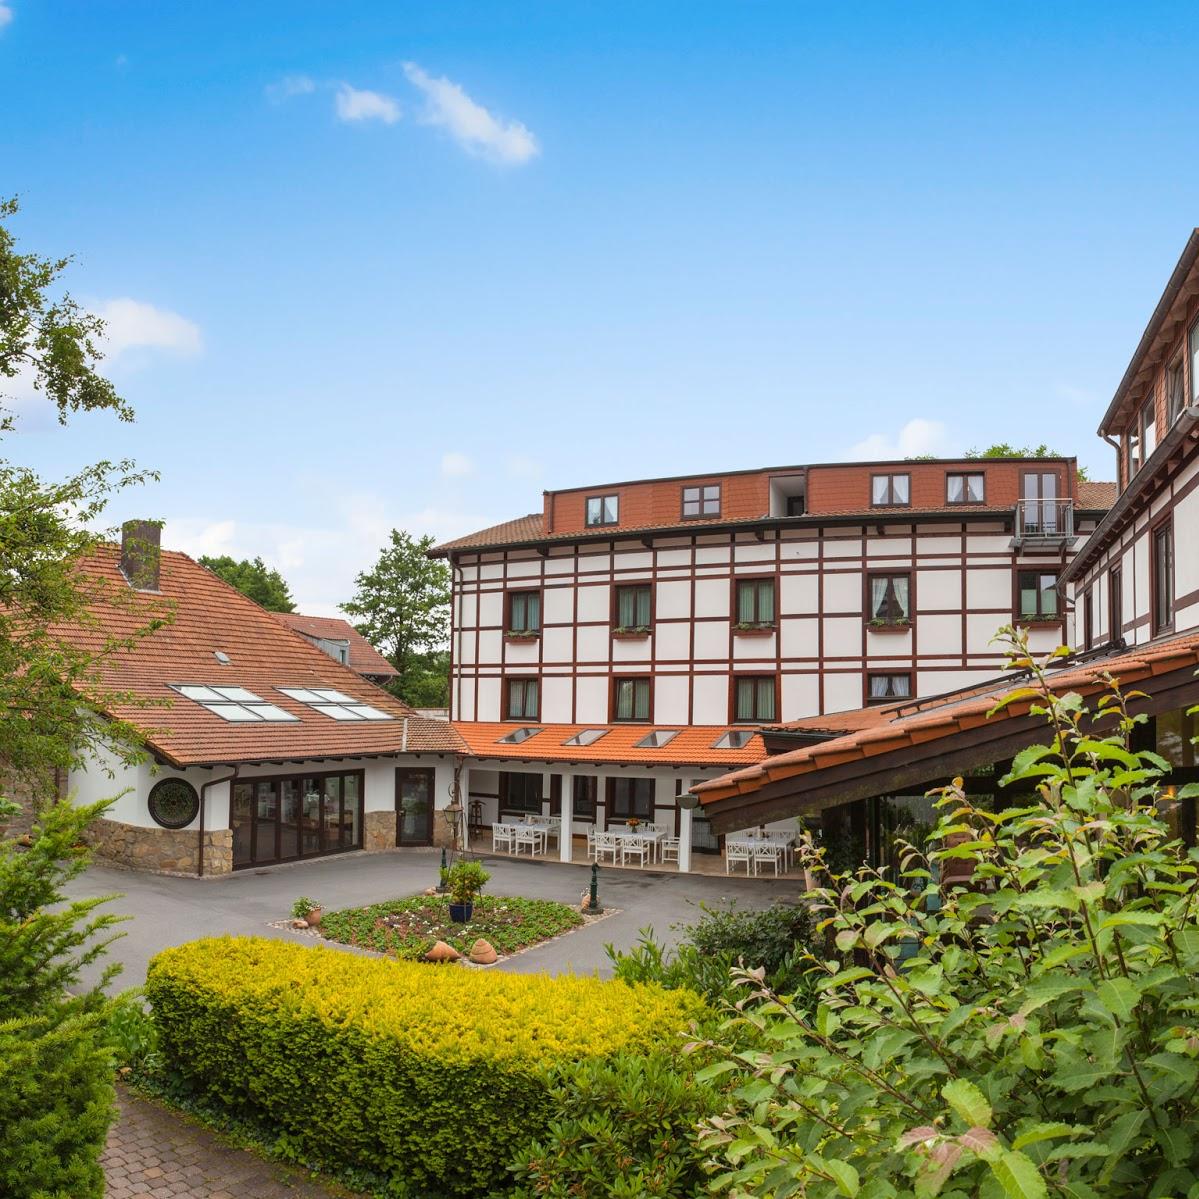 Restaurant "Landhotel Der Schwallenhof 3 Sterne Superior" in Bad Driburg